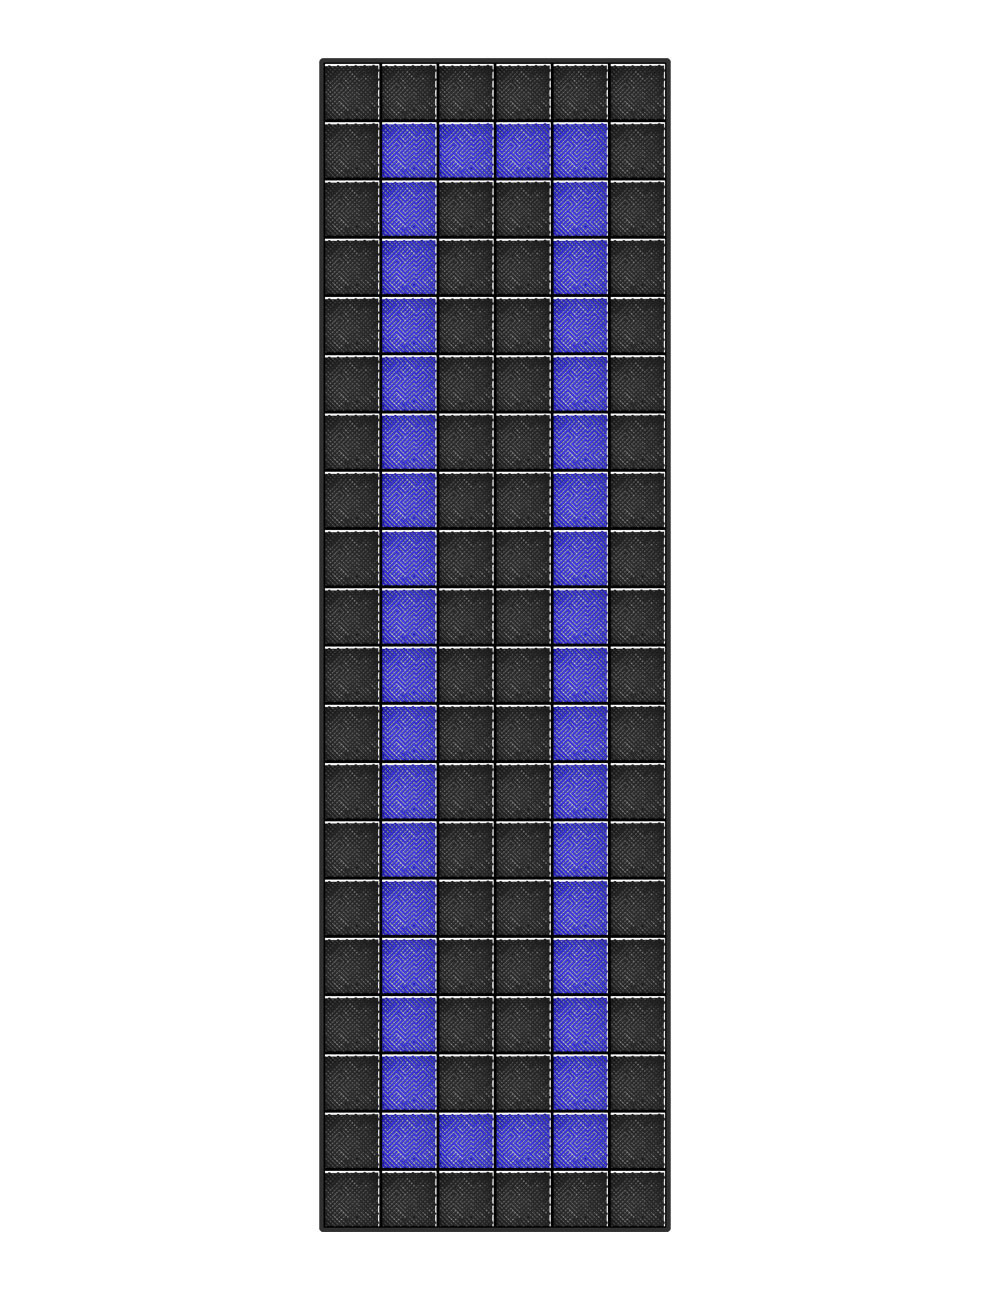 Kit dalles de sol motif racing pour garage - 30m² - 10 m x 3 m - Noir et bleu